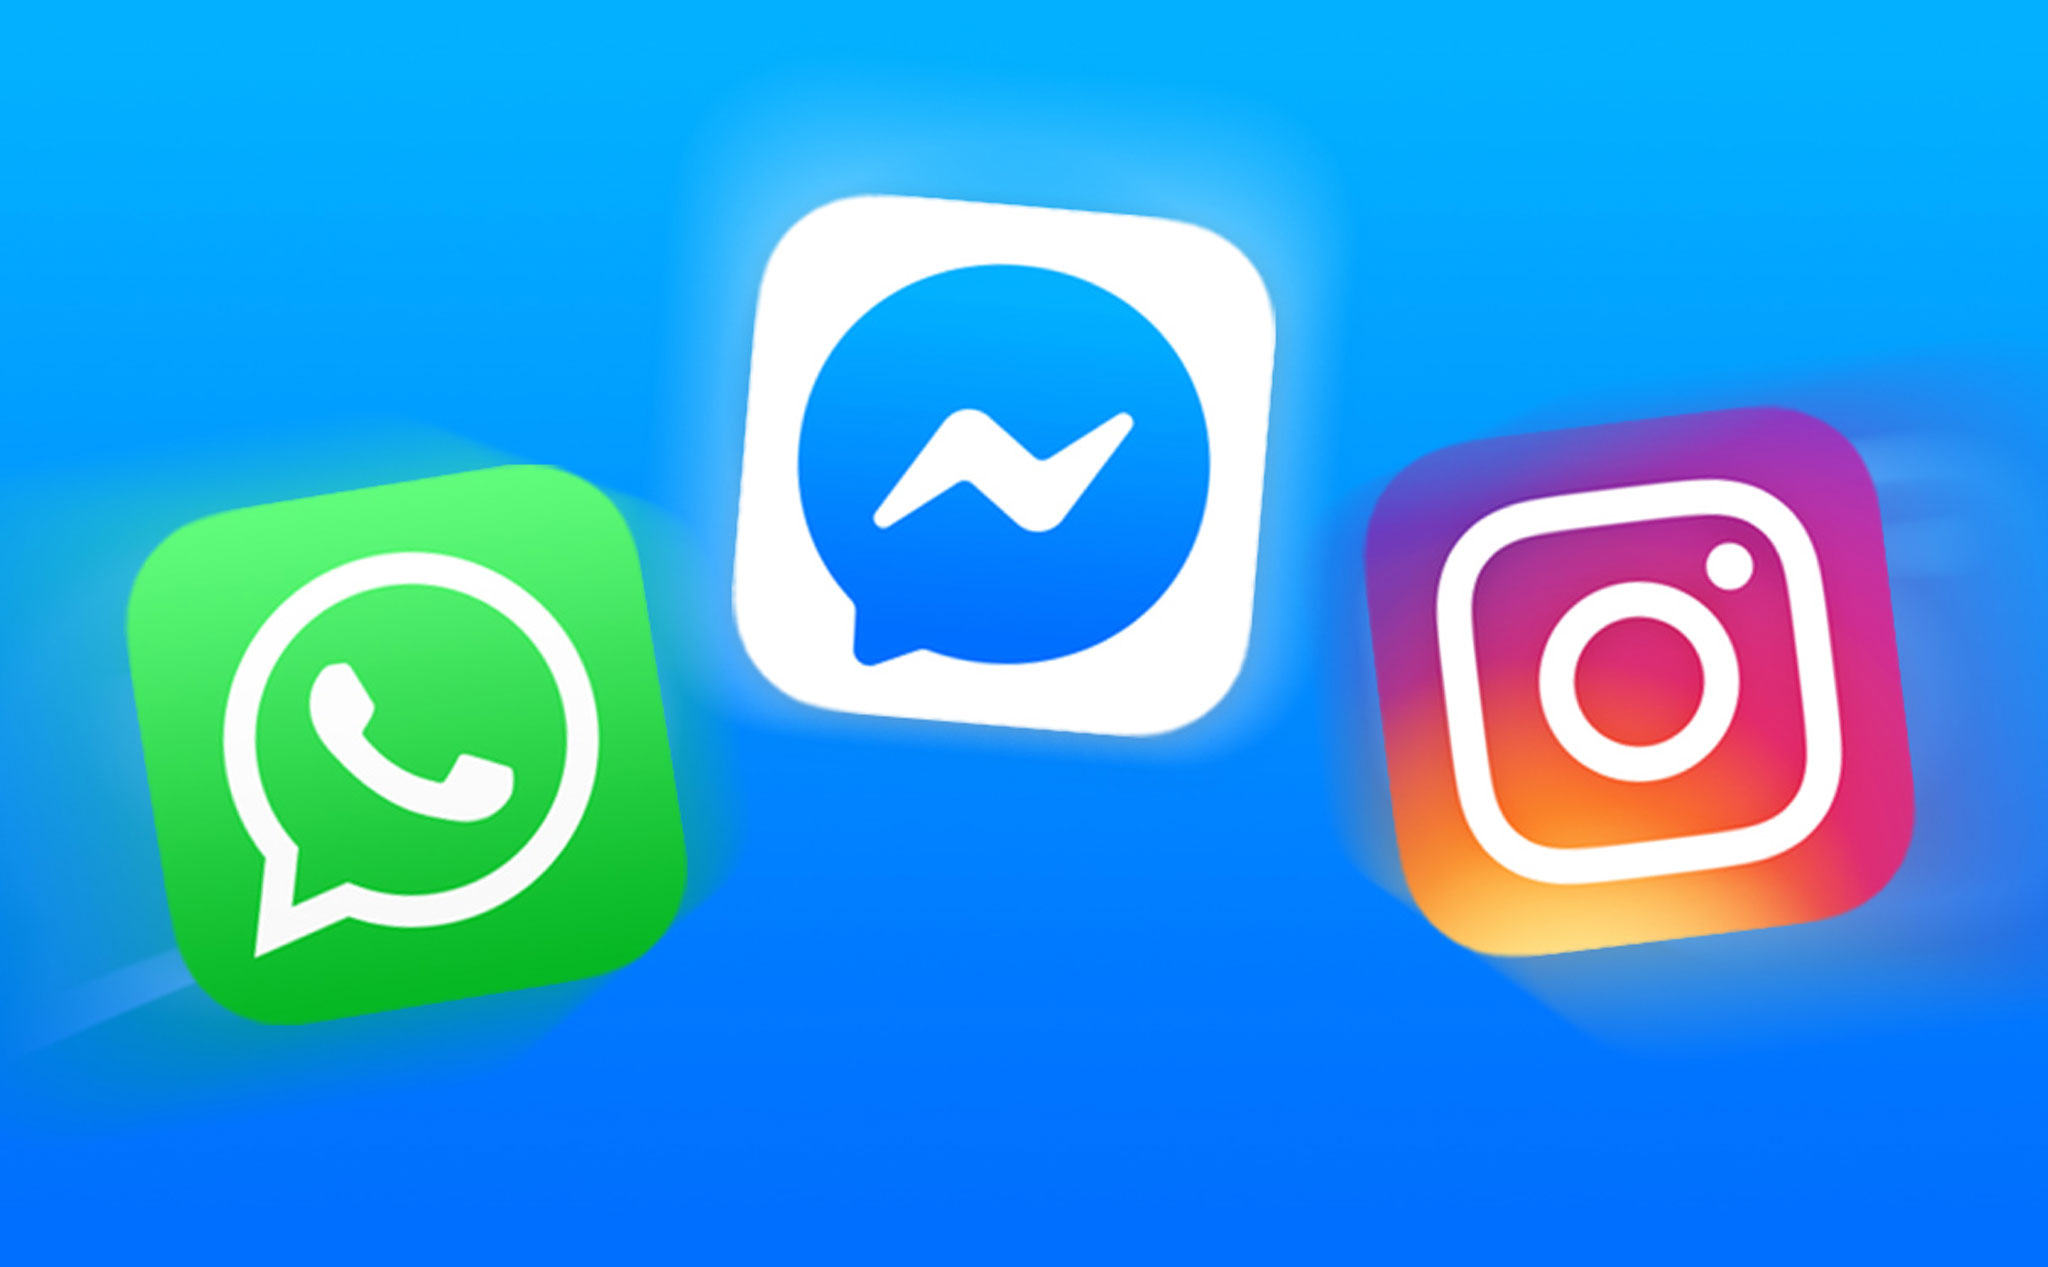 Đây là cách Facebook kết hợp Messenger, WhatsApp và Instagram lại với nhau